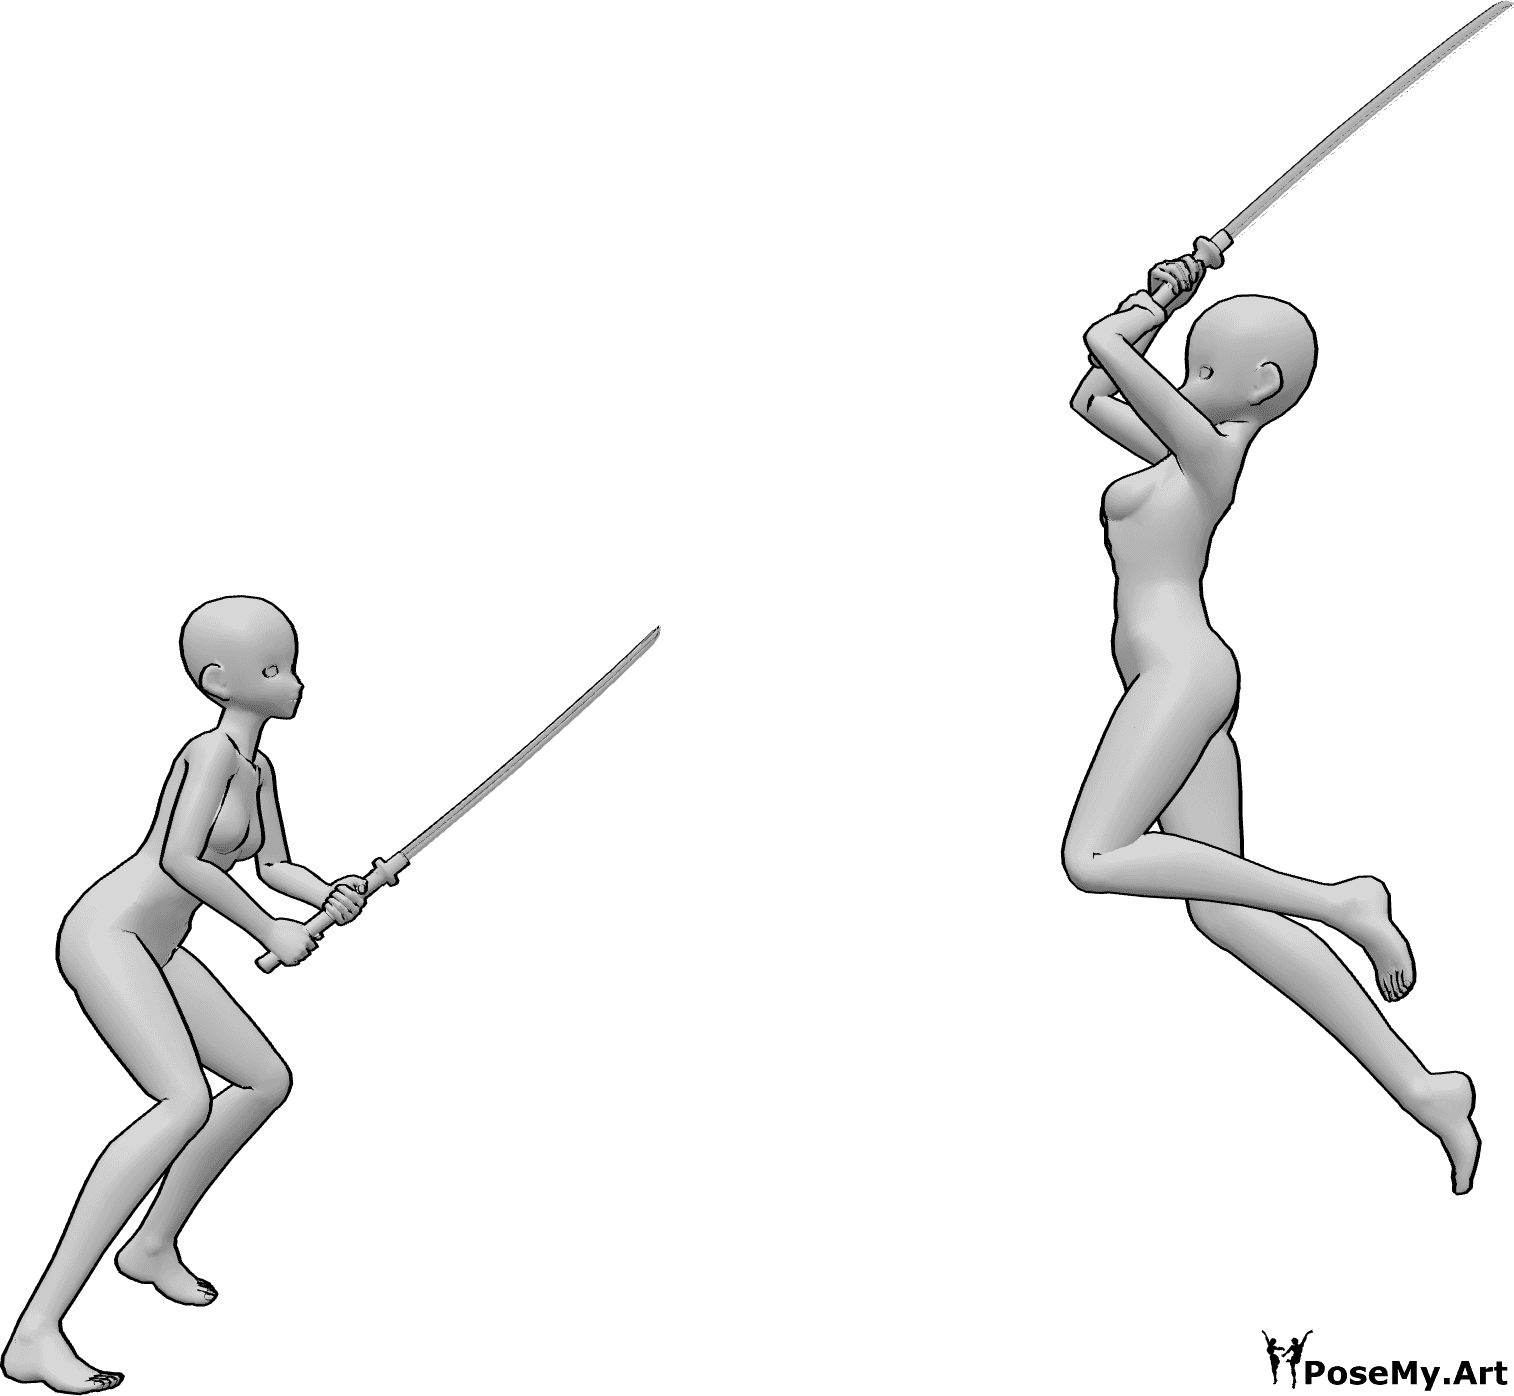 Referencia de poses- Anime katana lucha pose - Las mujeres del anime están luchando con katanas, una de ellas está saltando alto para golpear